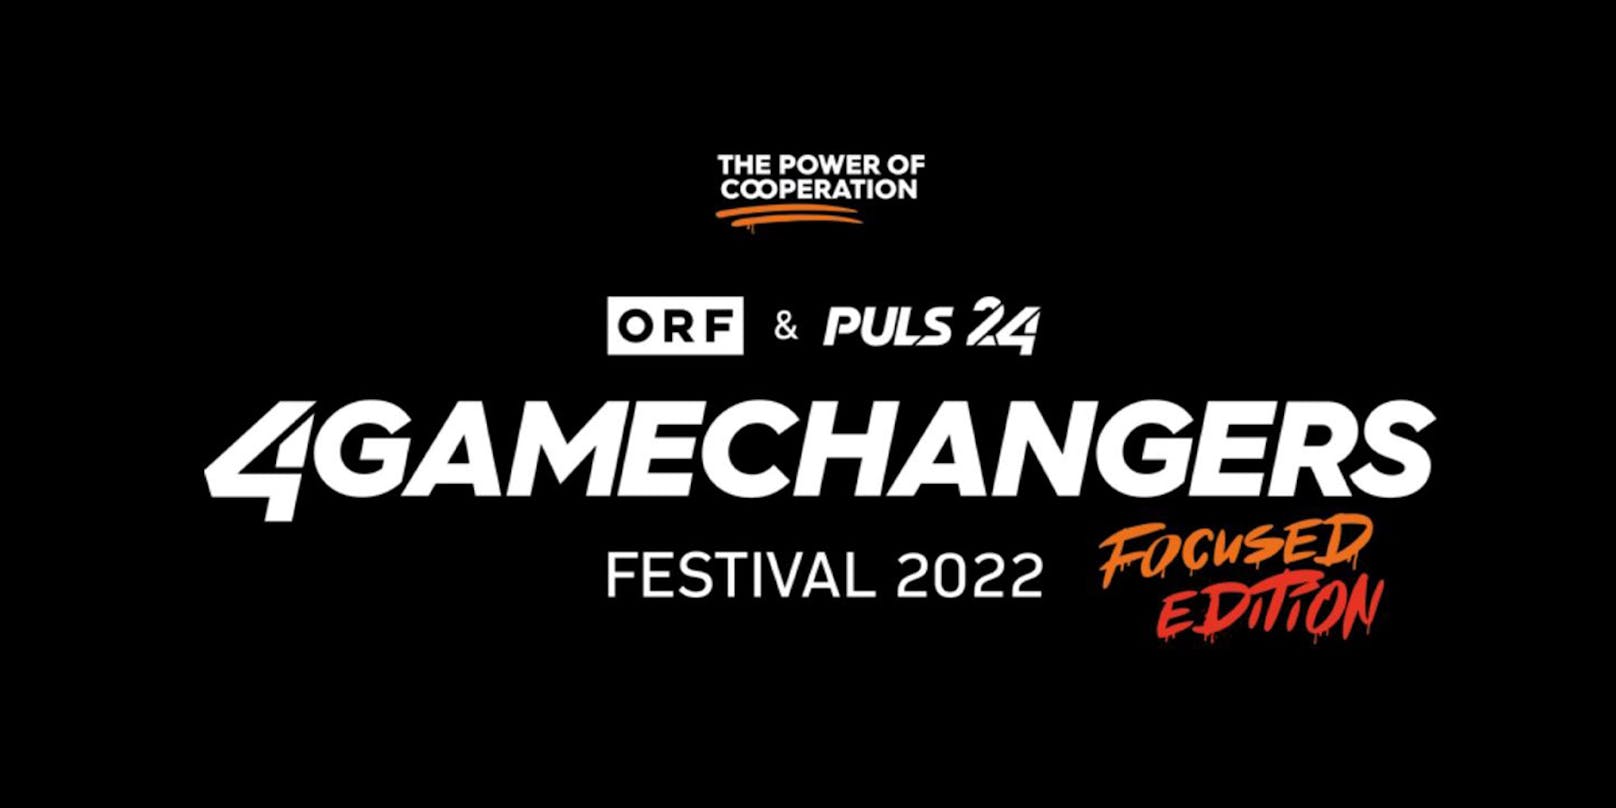 4GAMECHANGERS Festival 2022: Gewinne jetzt zwei Karten für 30. Juni. Hochkarätige Speaker wie George Clooney und tolle Live-Acts warten auf dich.